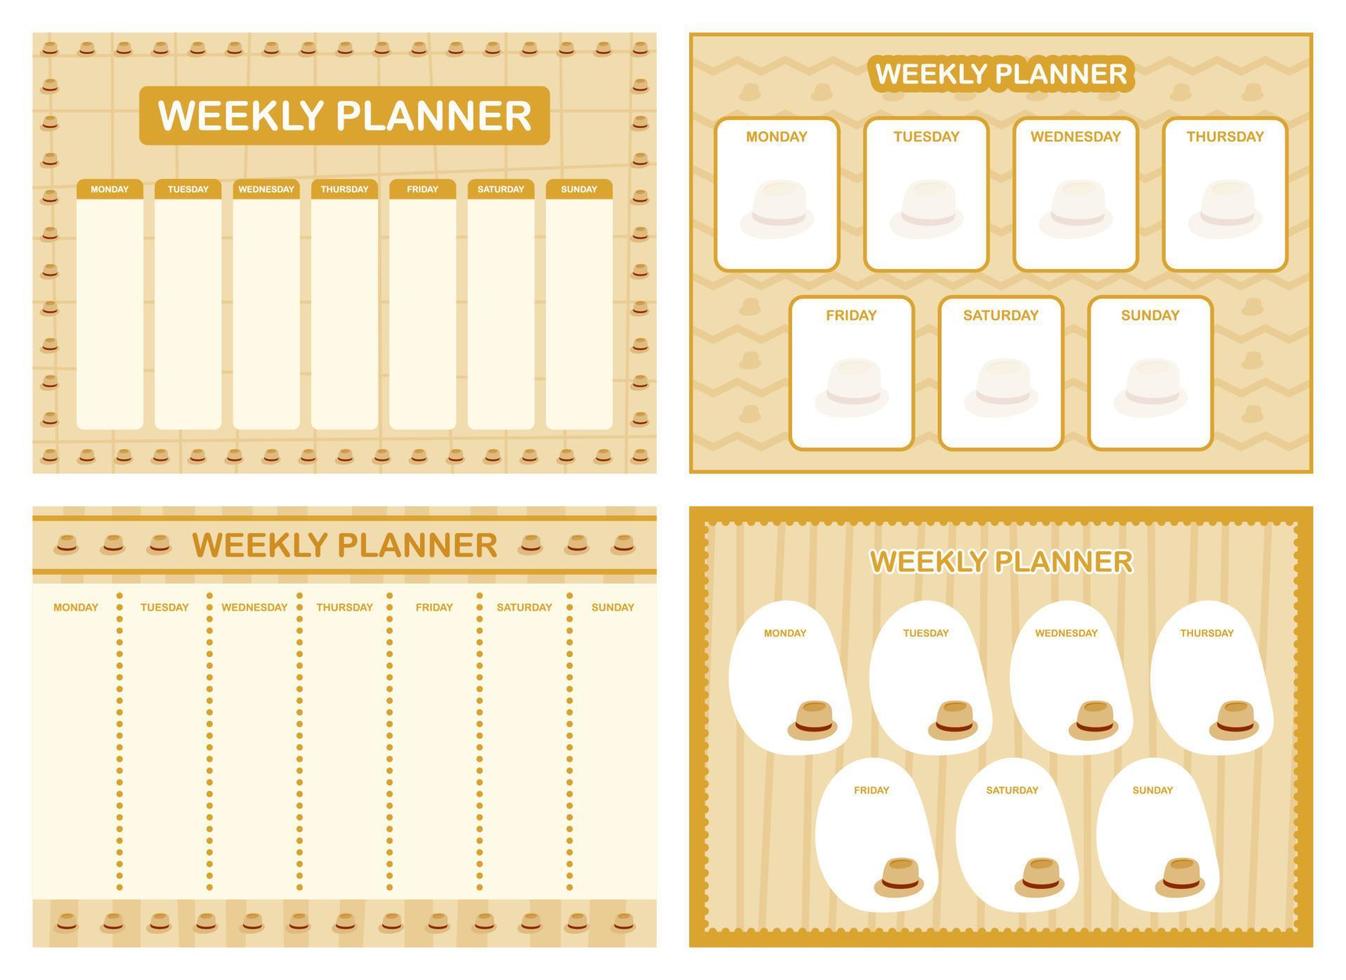 Weekly planner, kids schedule design template vector